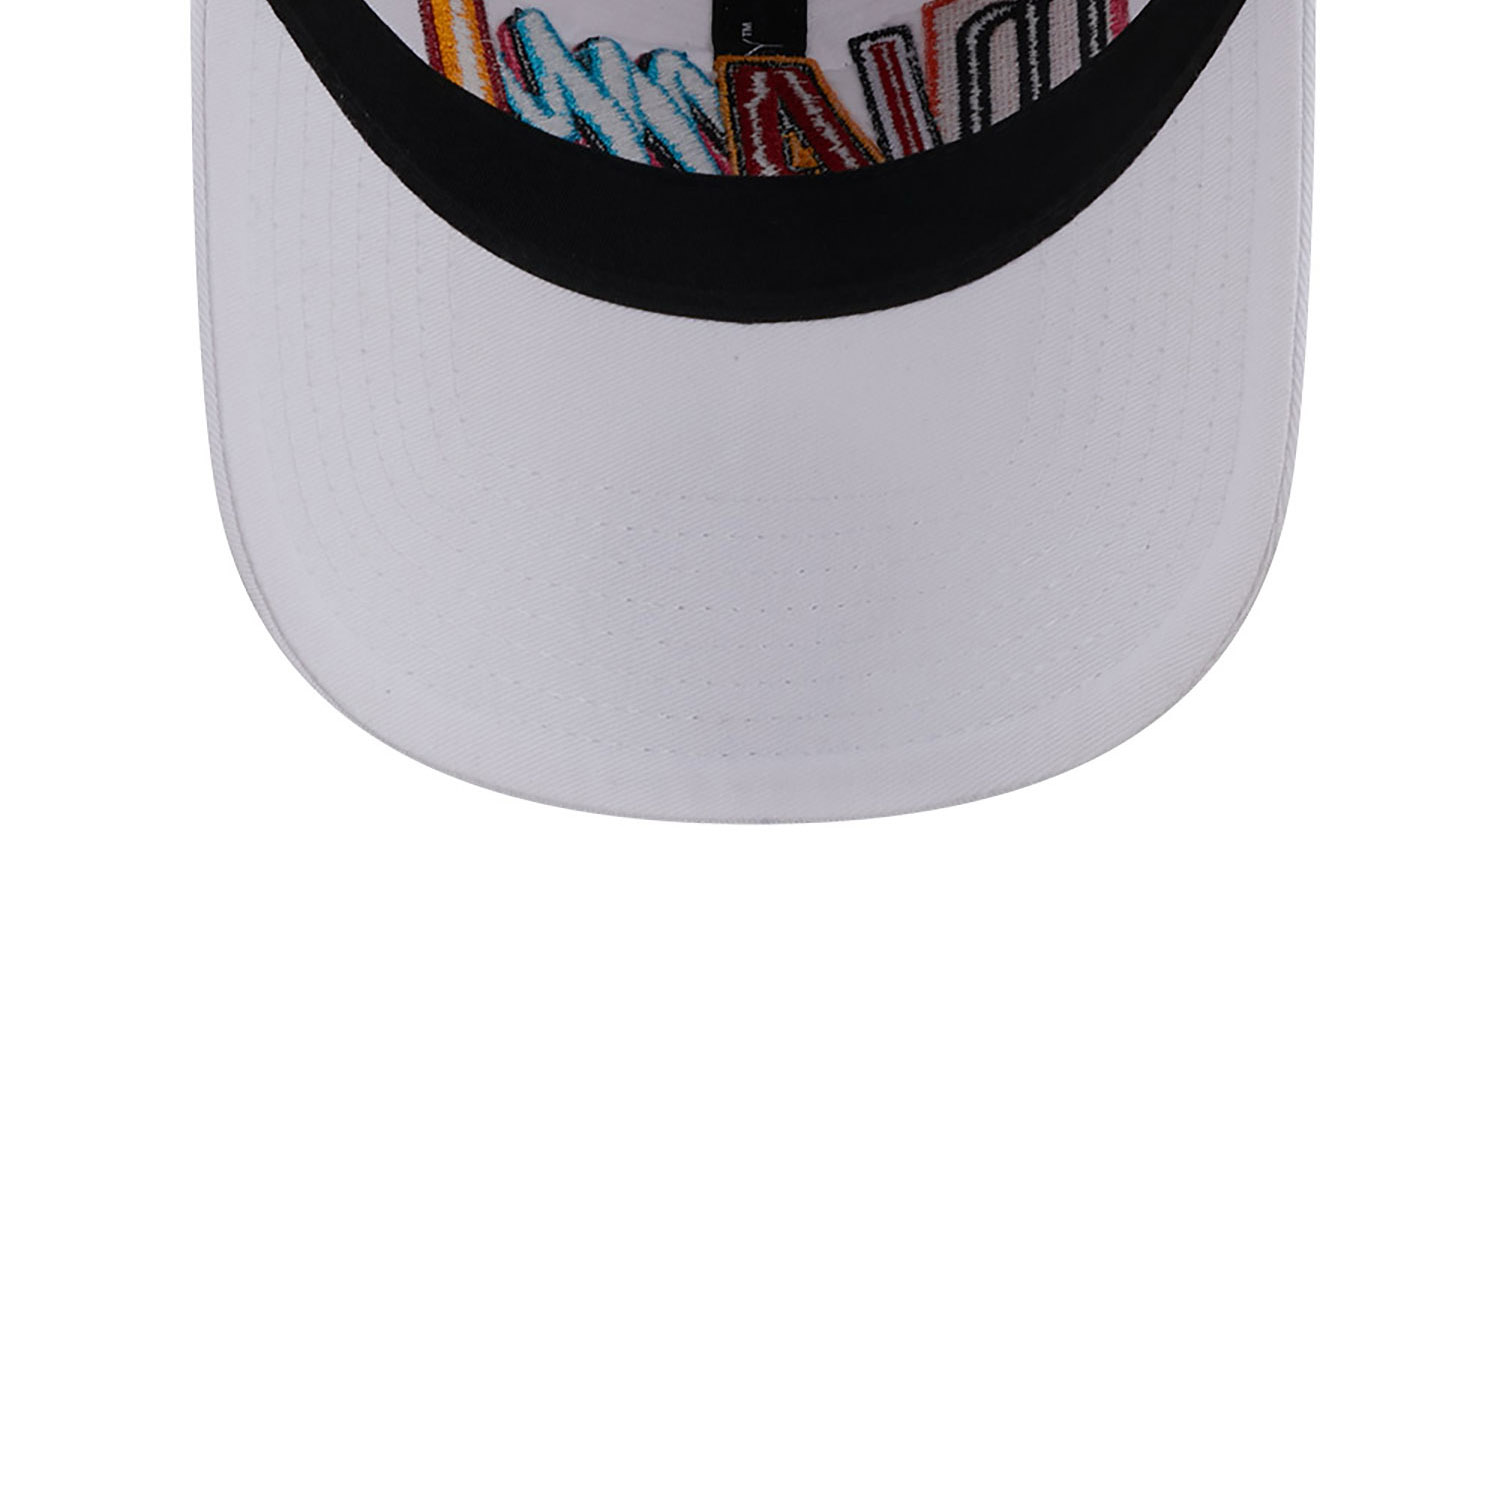 Miami Heat Authentics City Edition White 9TWENTY Adjustable Cap